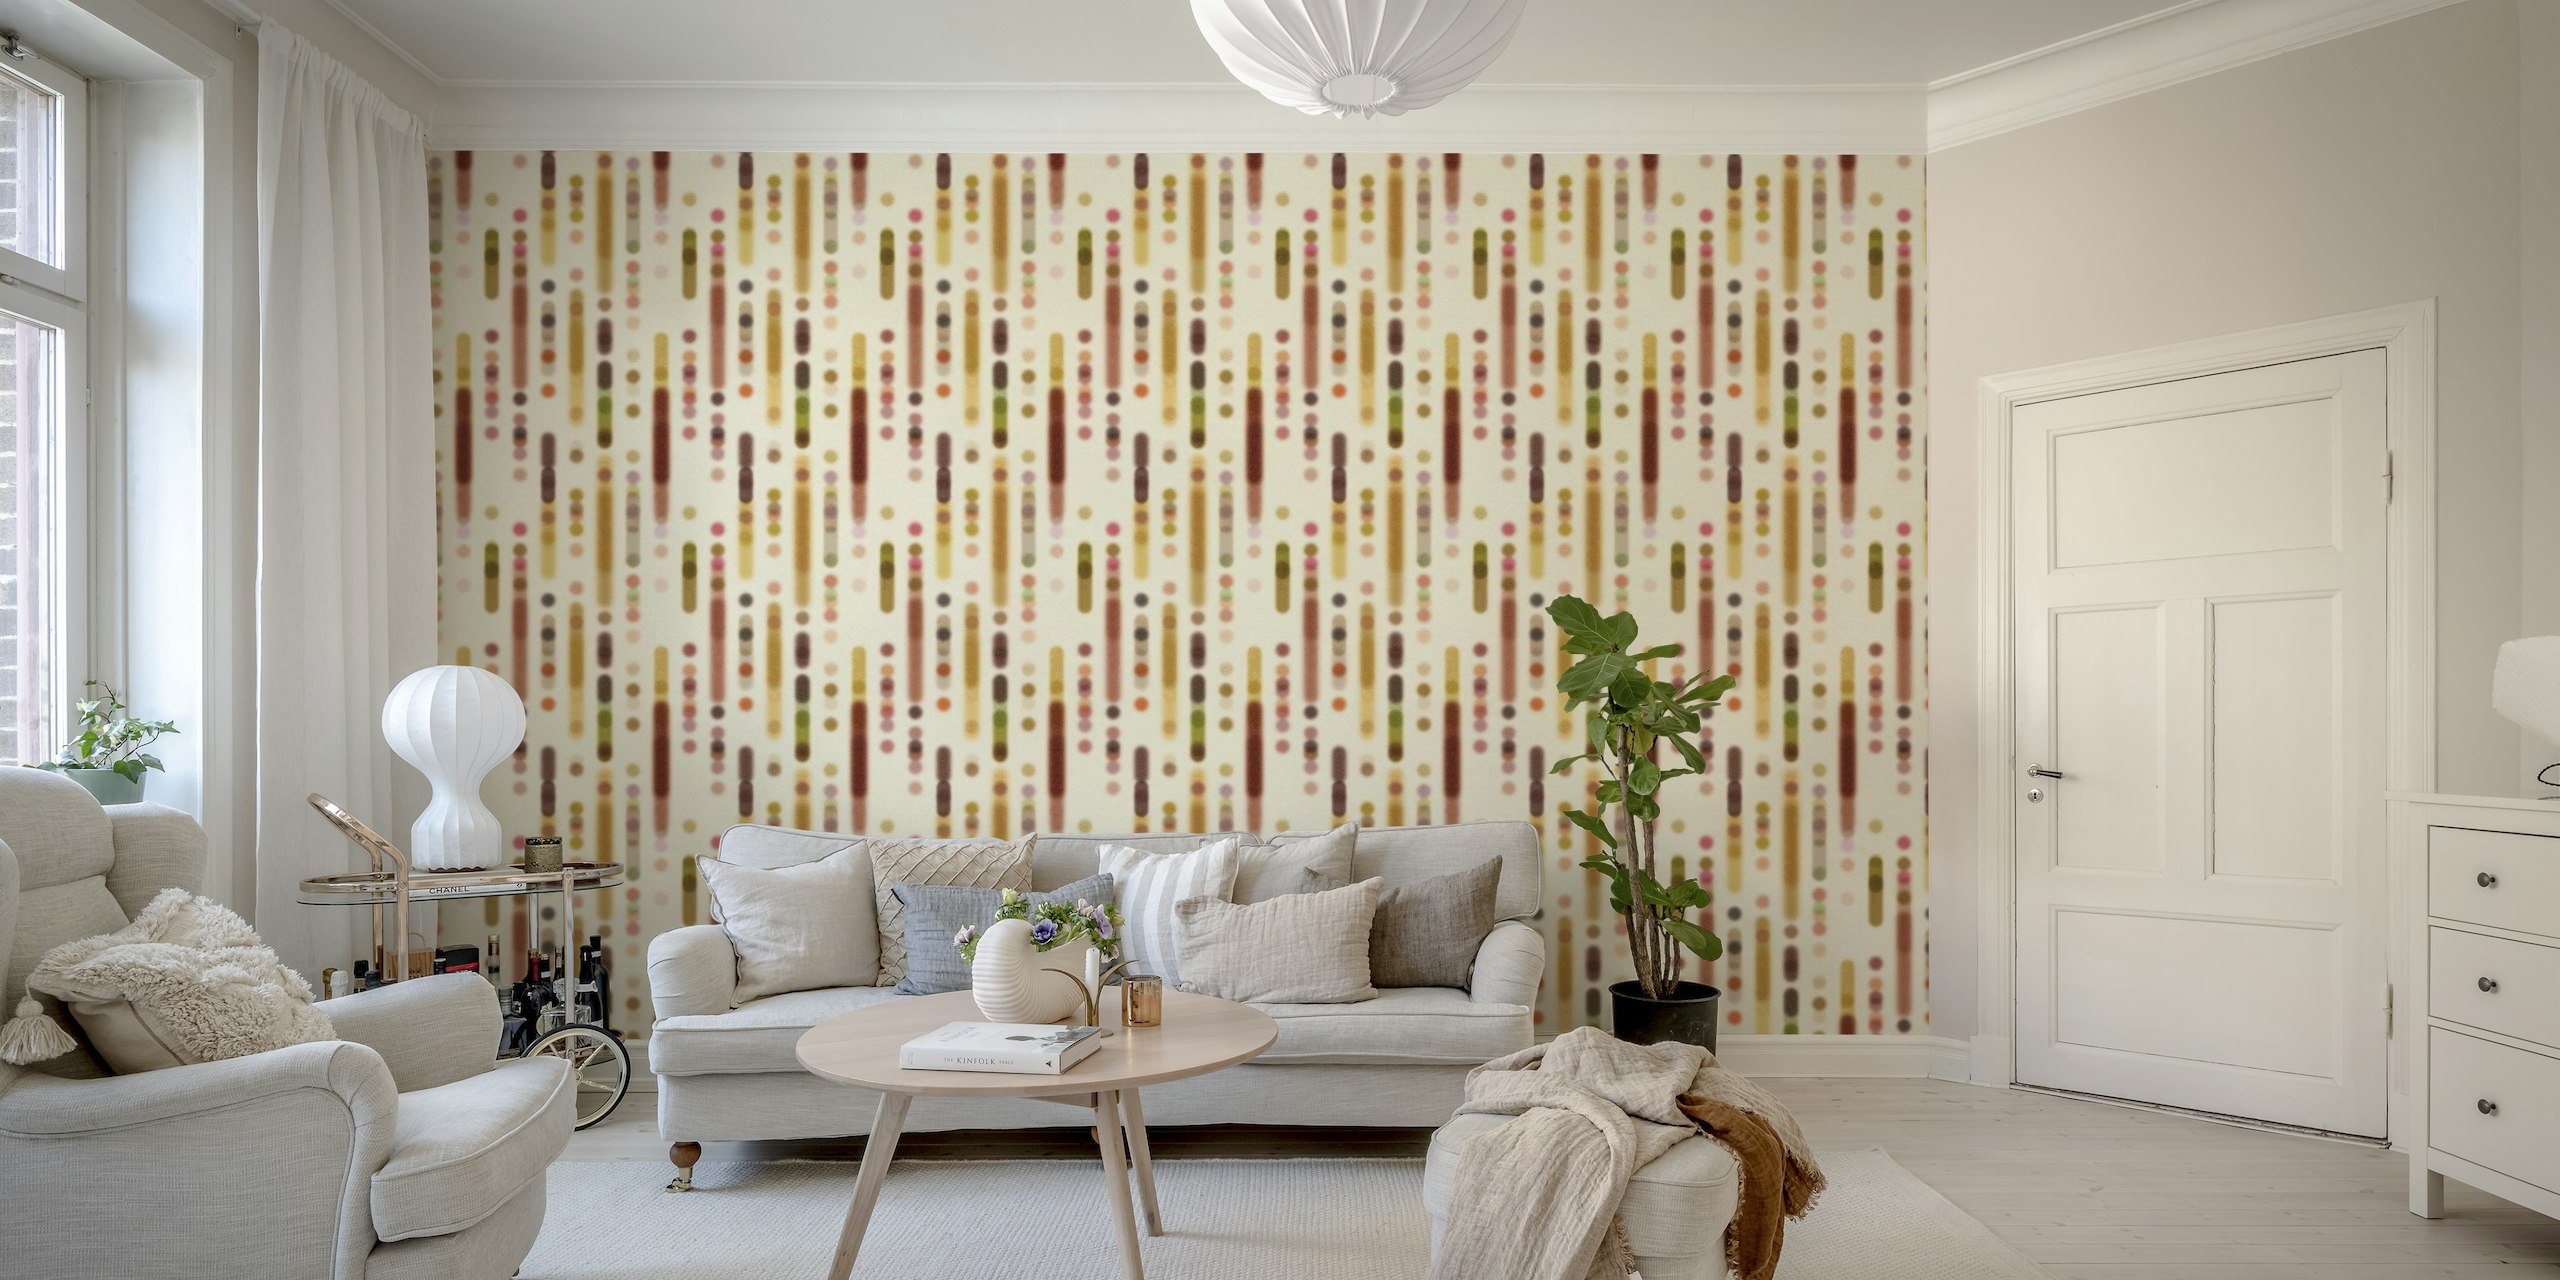 Warm Minimalistic geometrics blurred shapes wallpaper